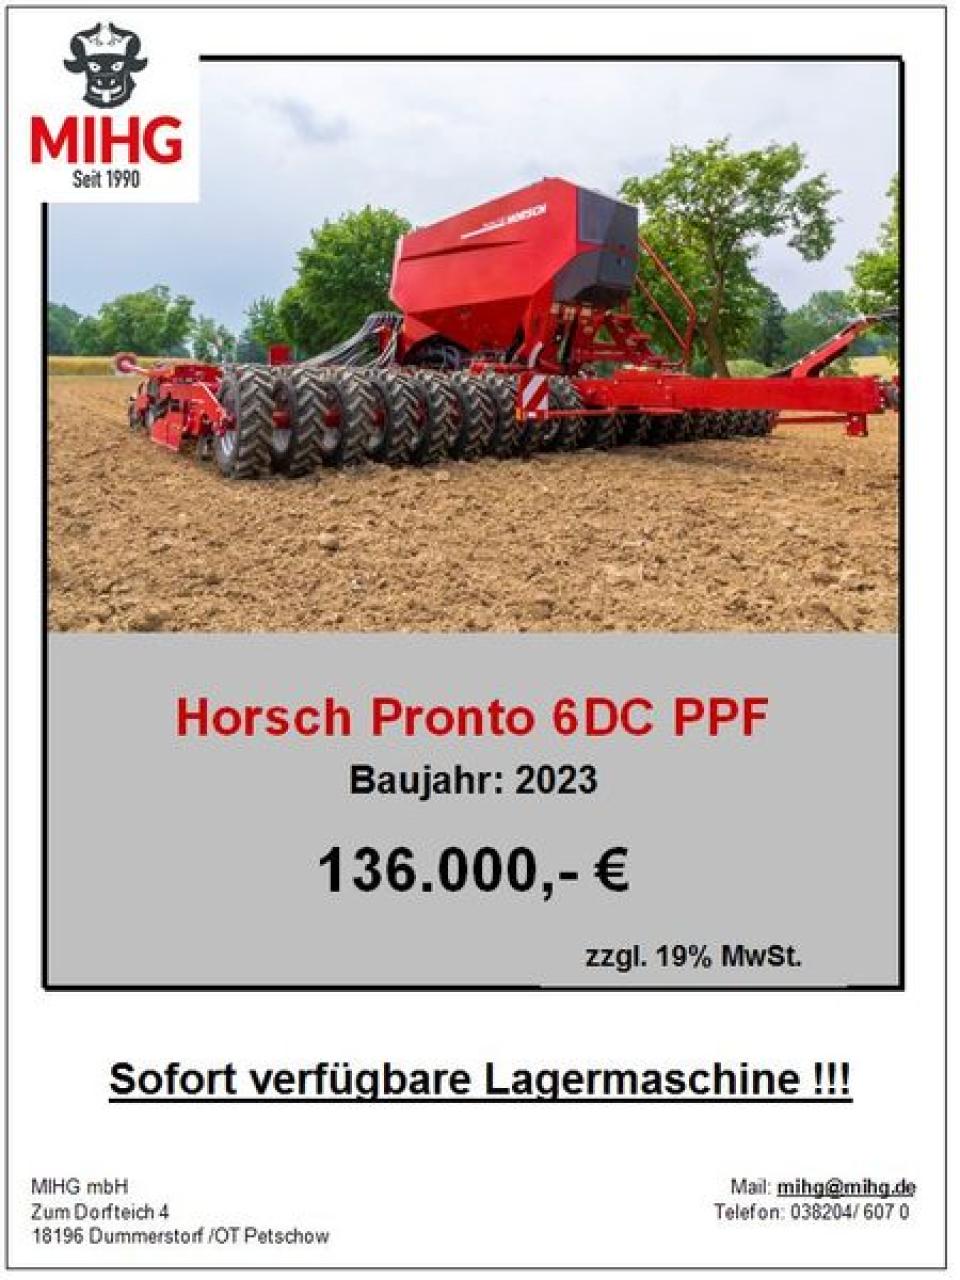 Horsch PRONTO 6DC PPF